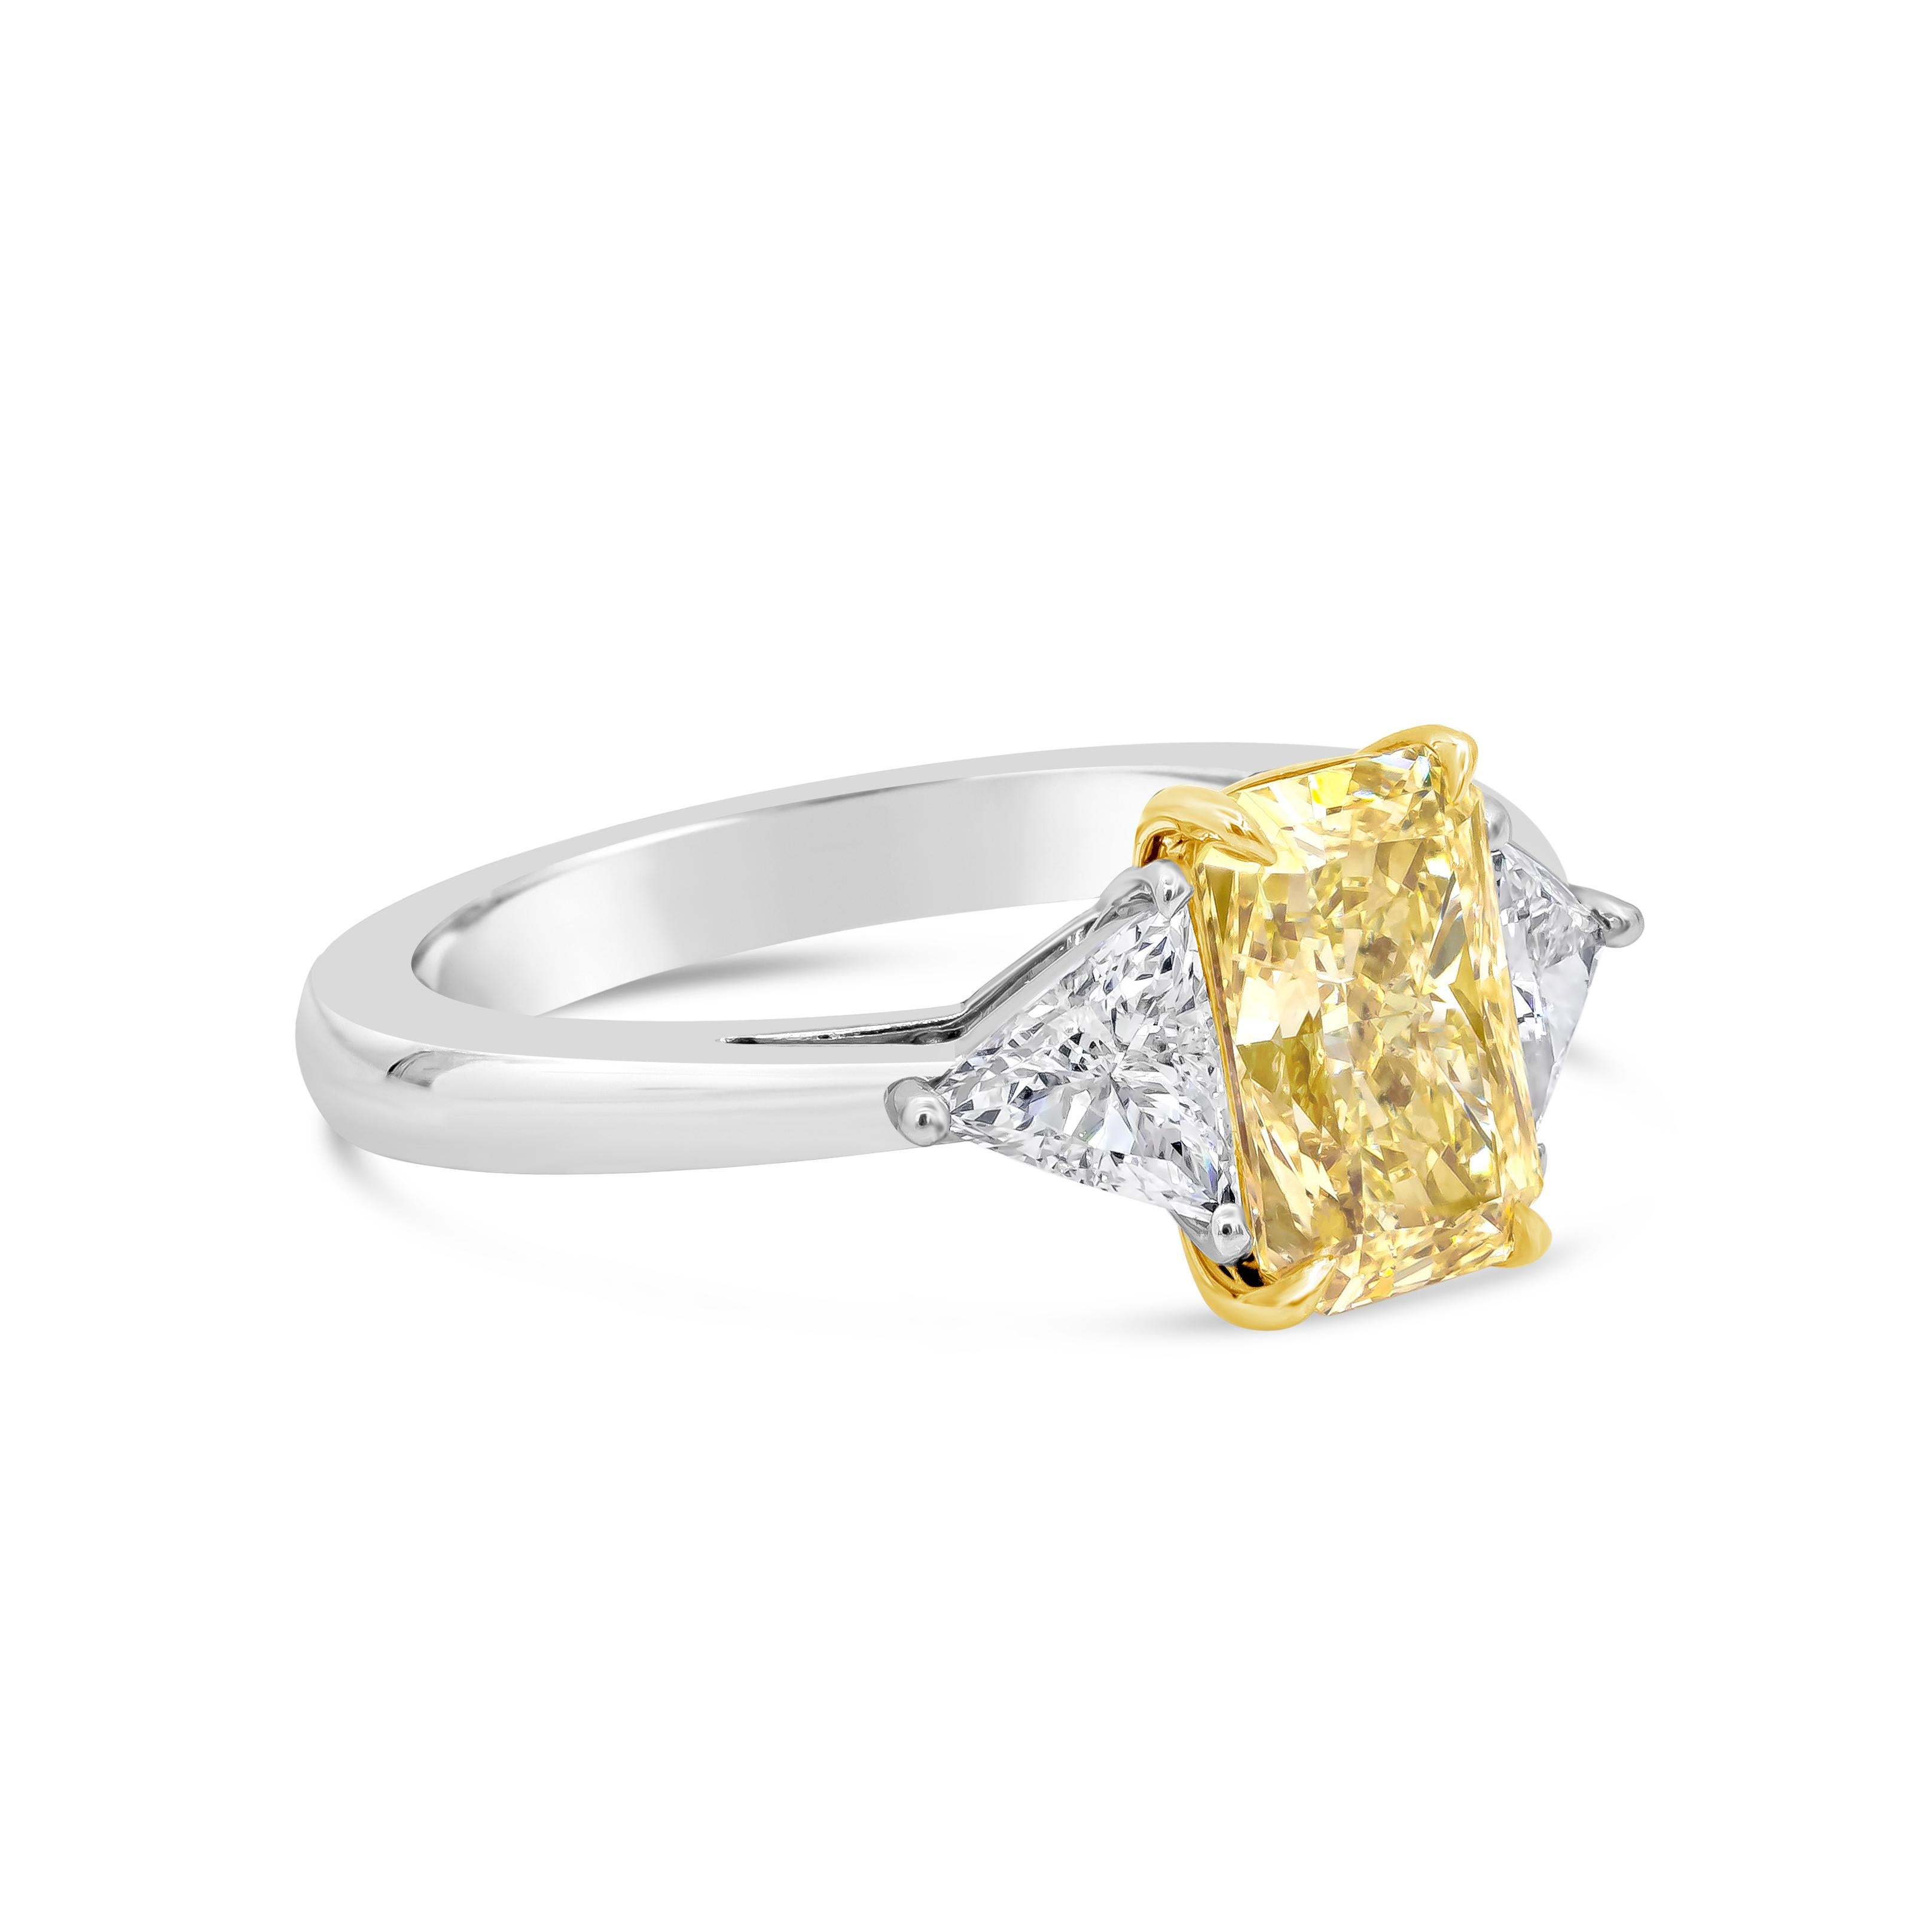 Dieser wunderschöne Verlobungsring mit drei Steinen besteht aus einem GIA-zertifizierten gelben Diamanten im Brillantschliff mit 2,02 Karat und einer Reinheit von I1. Er ist in einem Korb aus 18 Karat Gelbgold gefasst und wird von Billionen